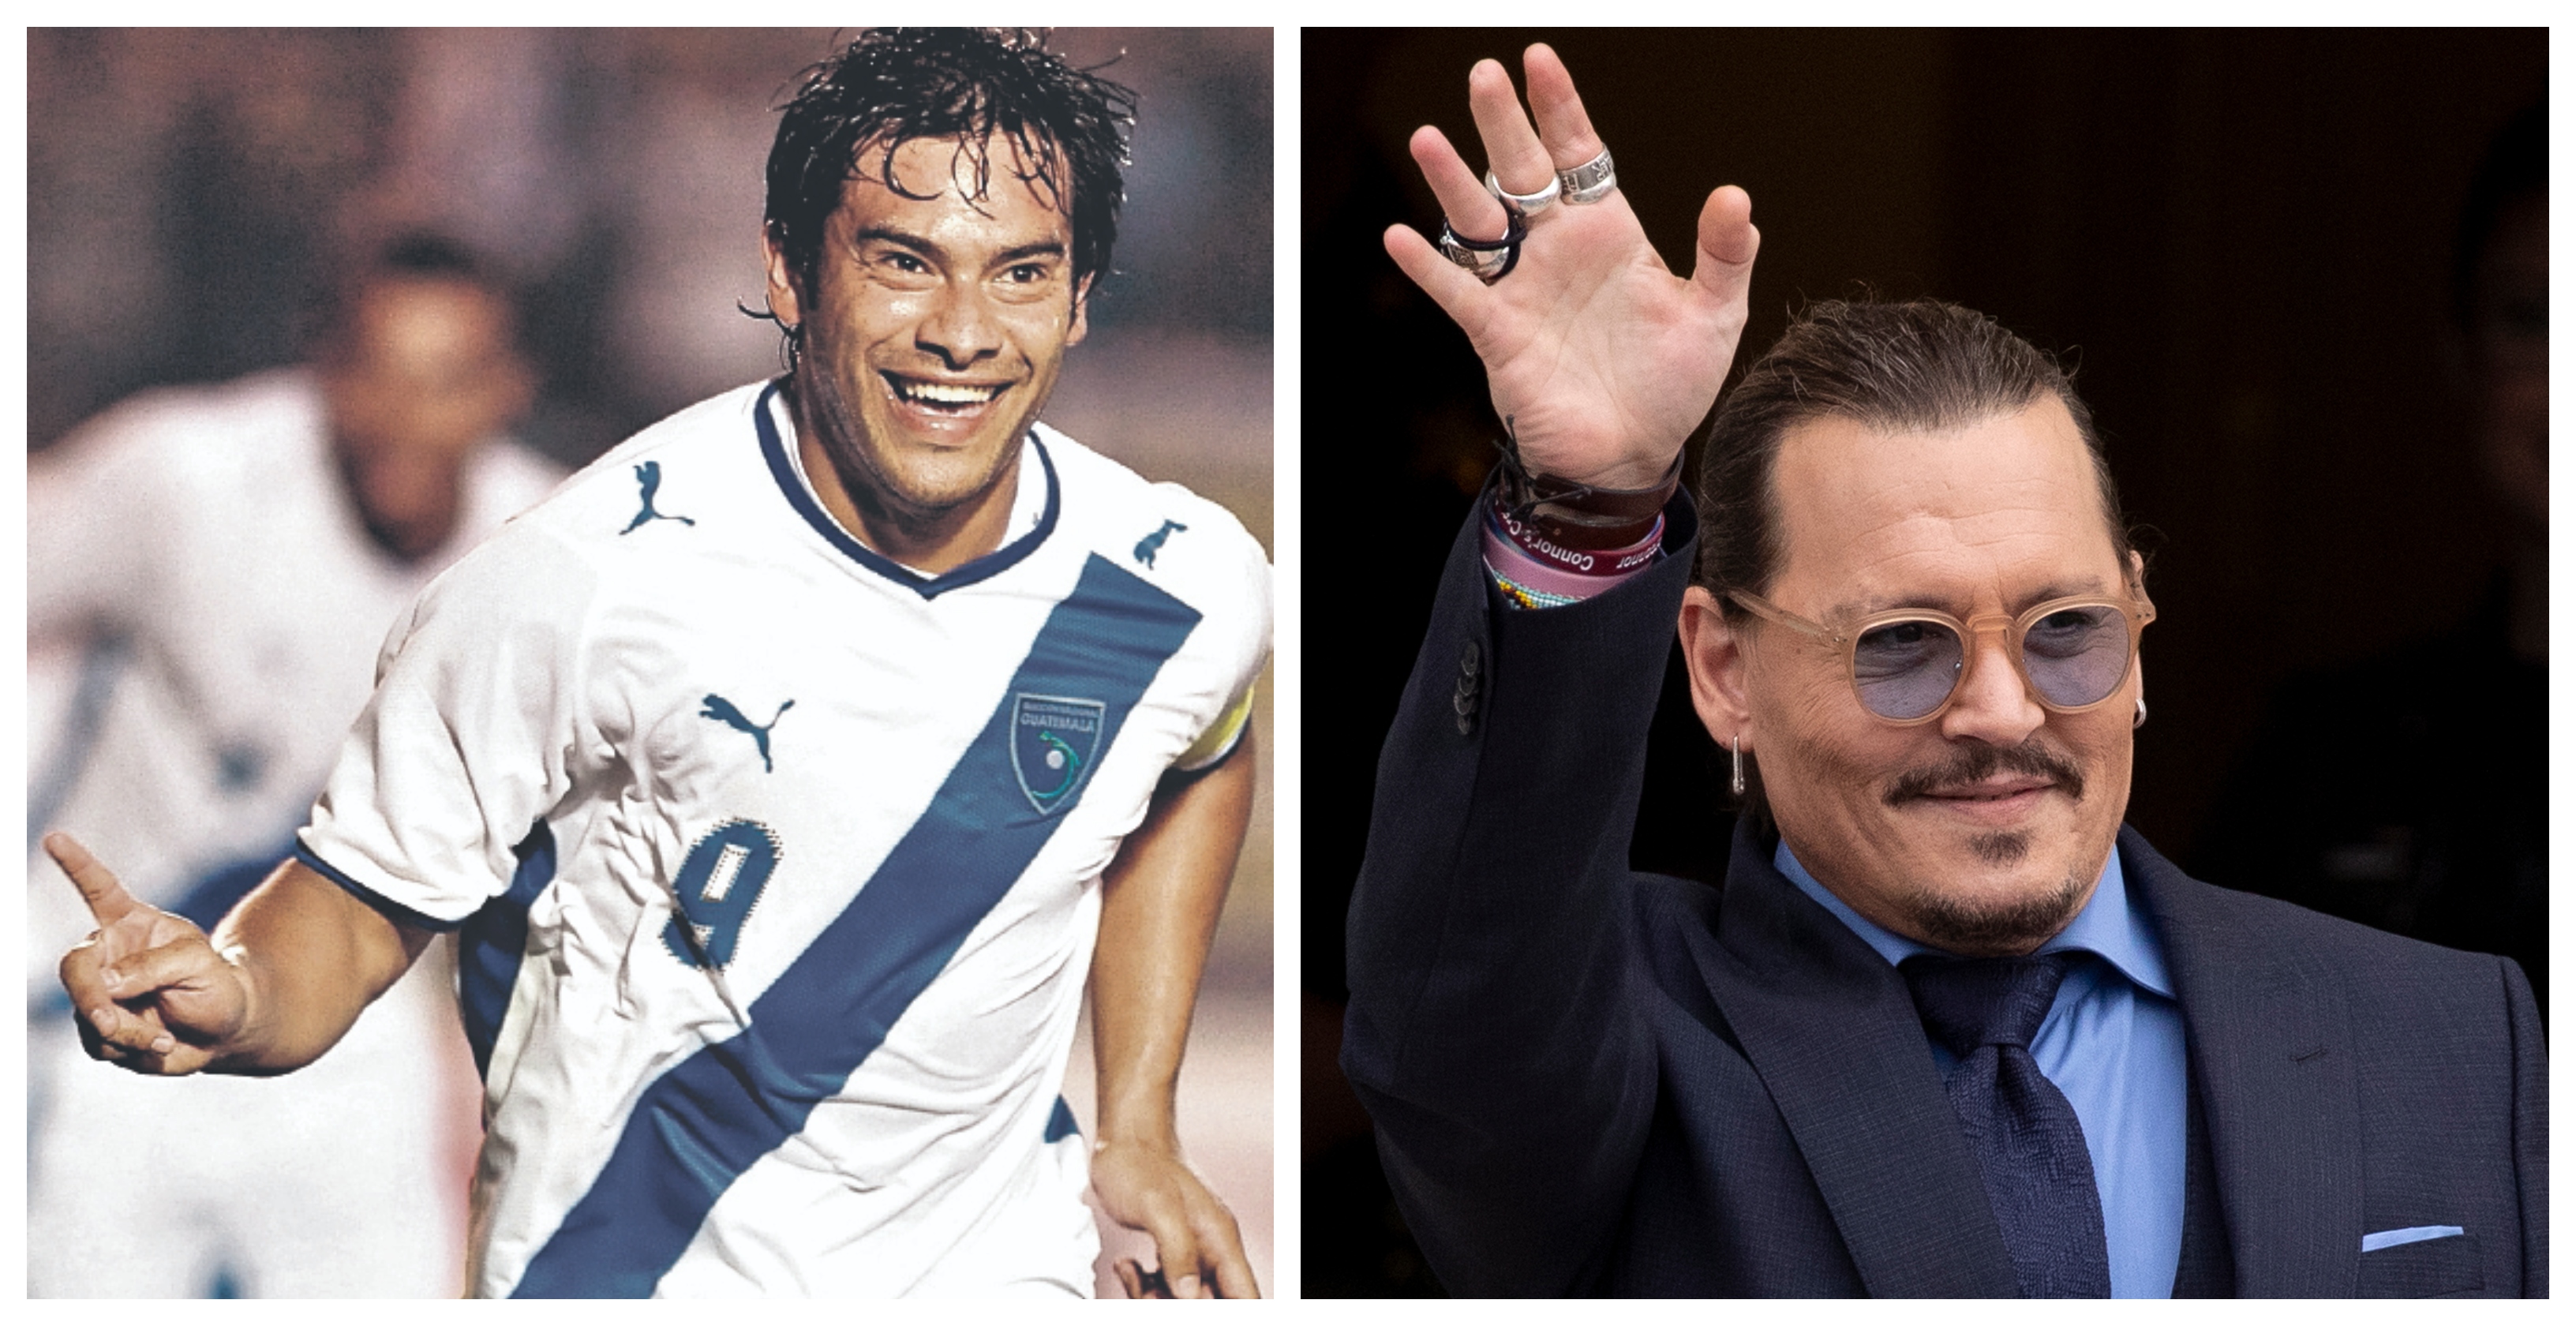 Carlos Ruiz mostró su apoyo a Johnny Depp en redes sociales. (Foto Prensa Libre: Hemeroteca PL y EFE)